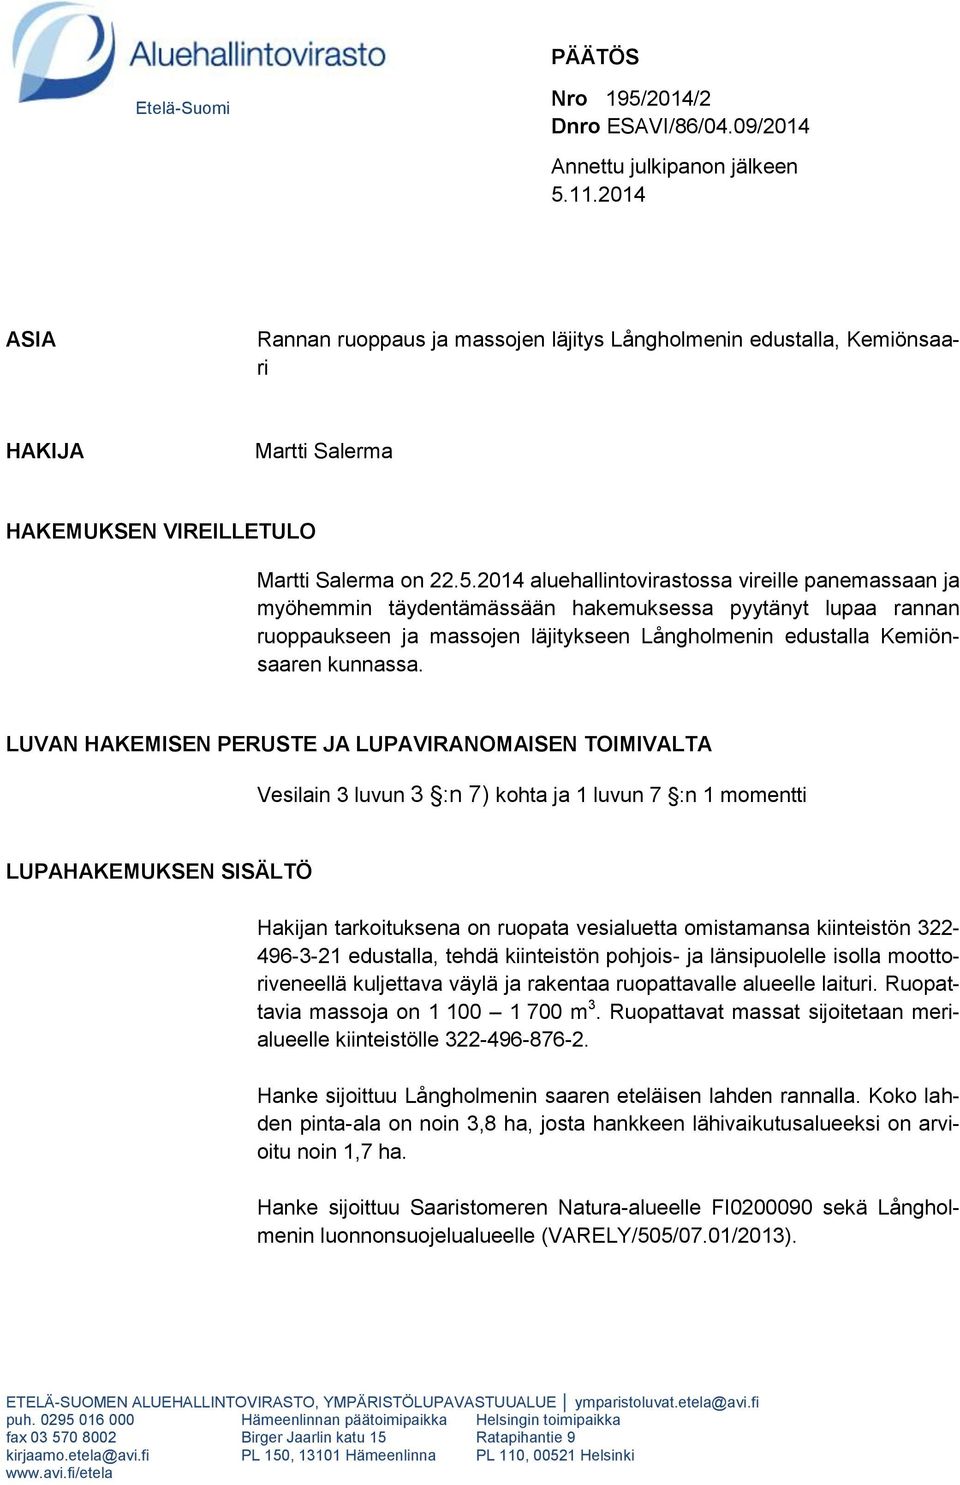 2014 aluehallintovirastossa vireille panemassaan ja myöhemmin täydentämässään hakemuksessa pyytänyt lupaa rannan ruoppaukseen ja massojen läjitykseen Långholmenin edustalla Kemiönsaaren kunnassa.